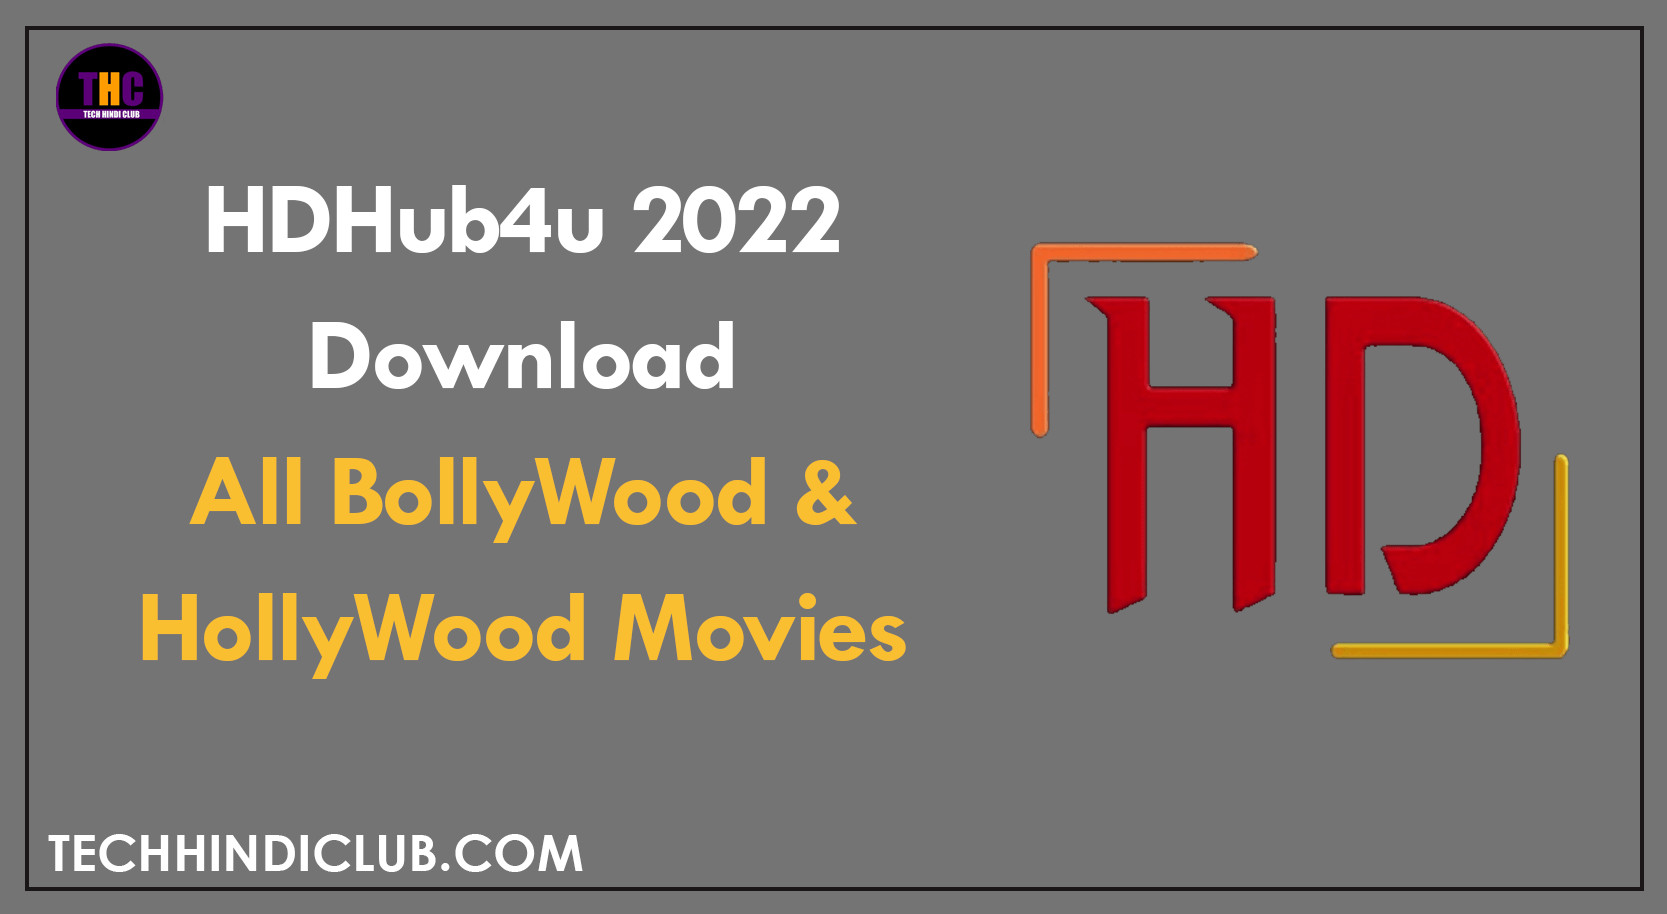 HDHub4u 2022 | Download All BollyWood & HollyWood Movies